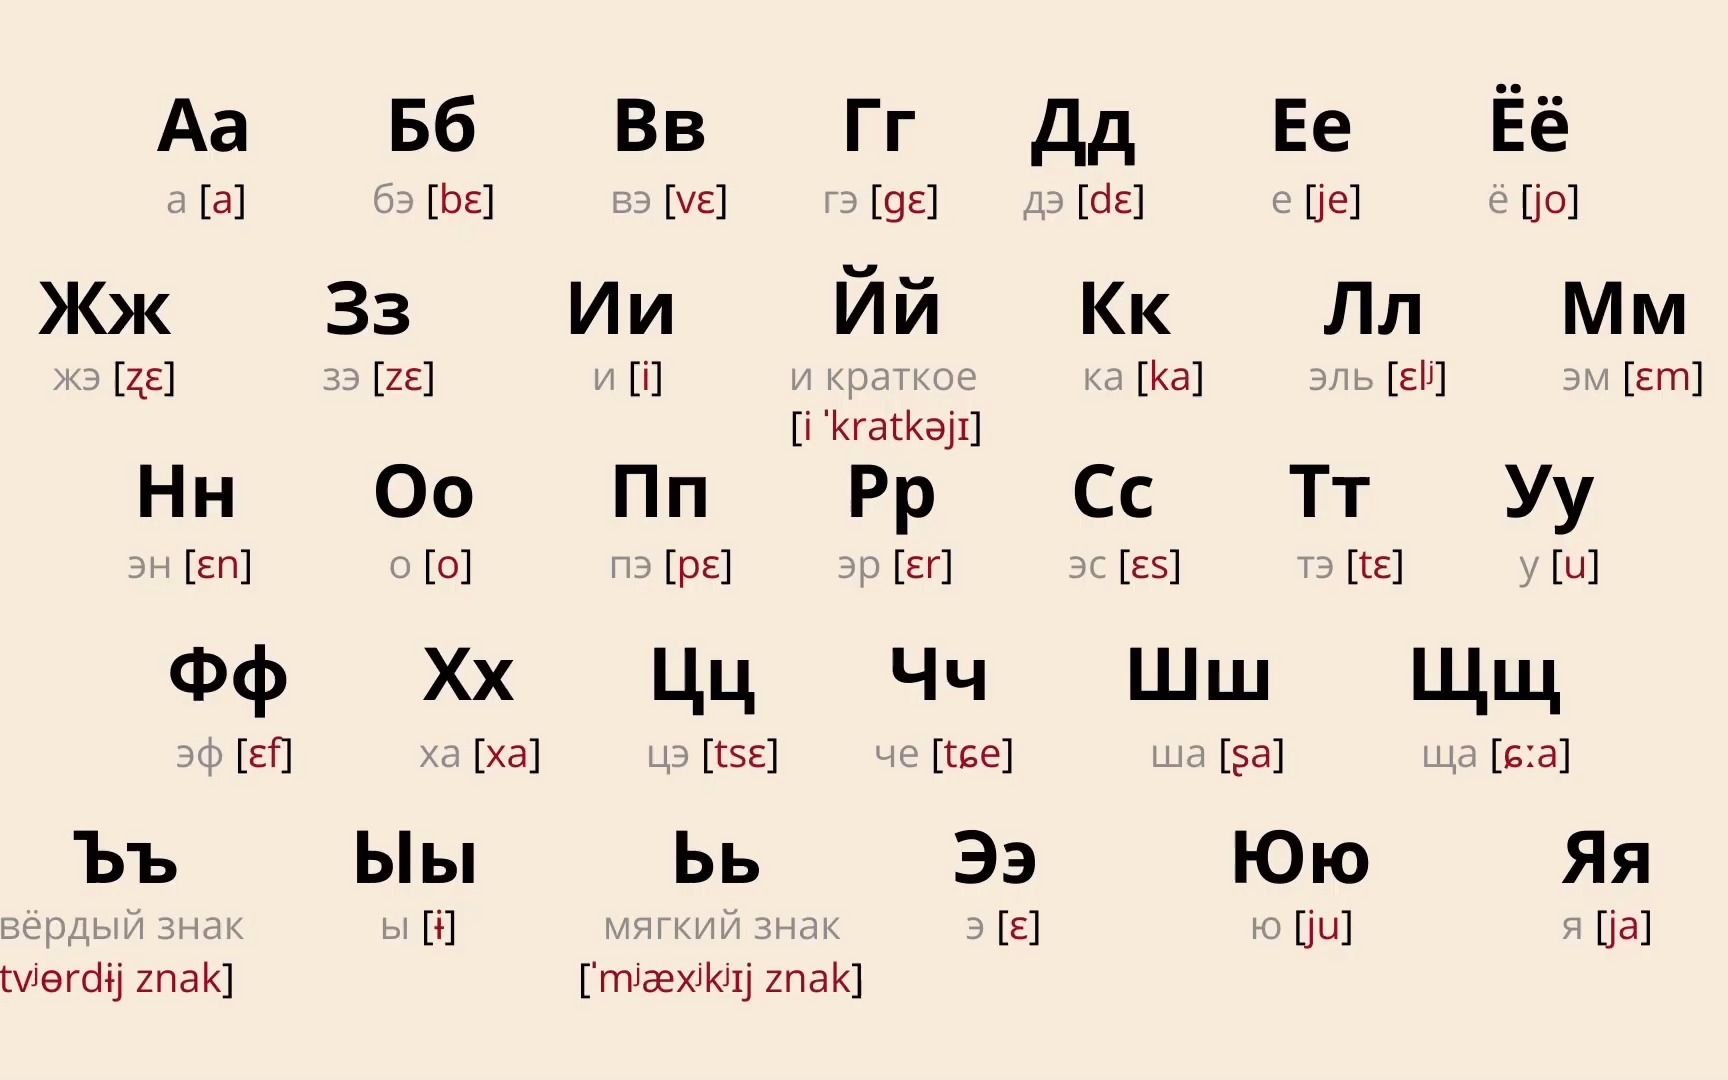 【零基础俄语入门】自学俄语字母表33个字母的发音